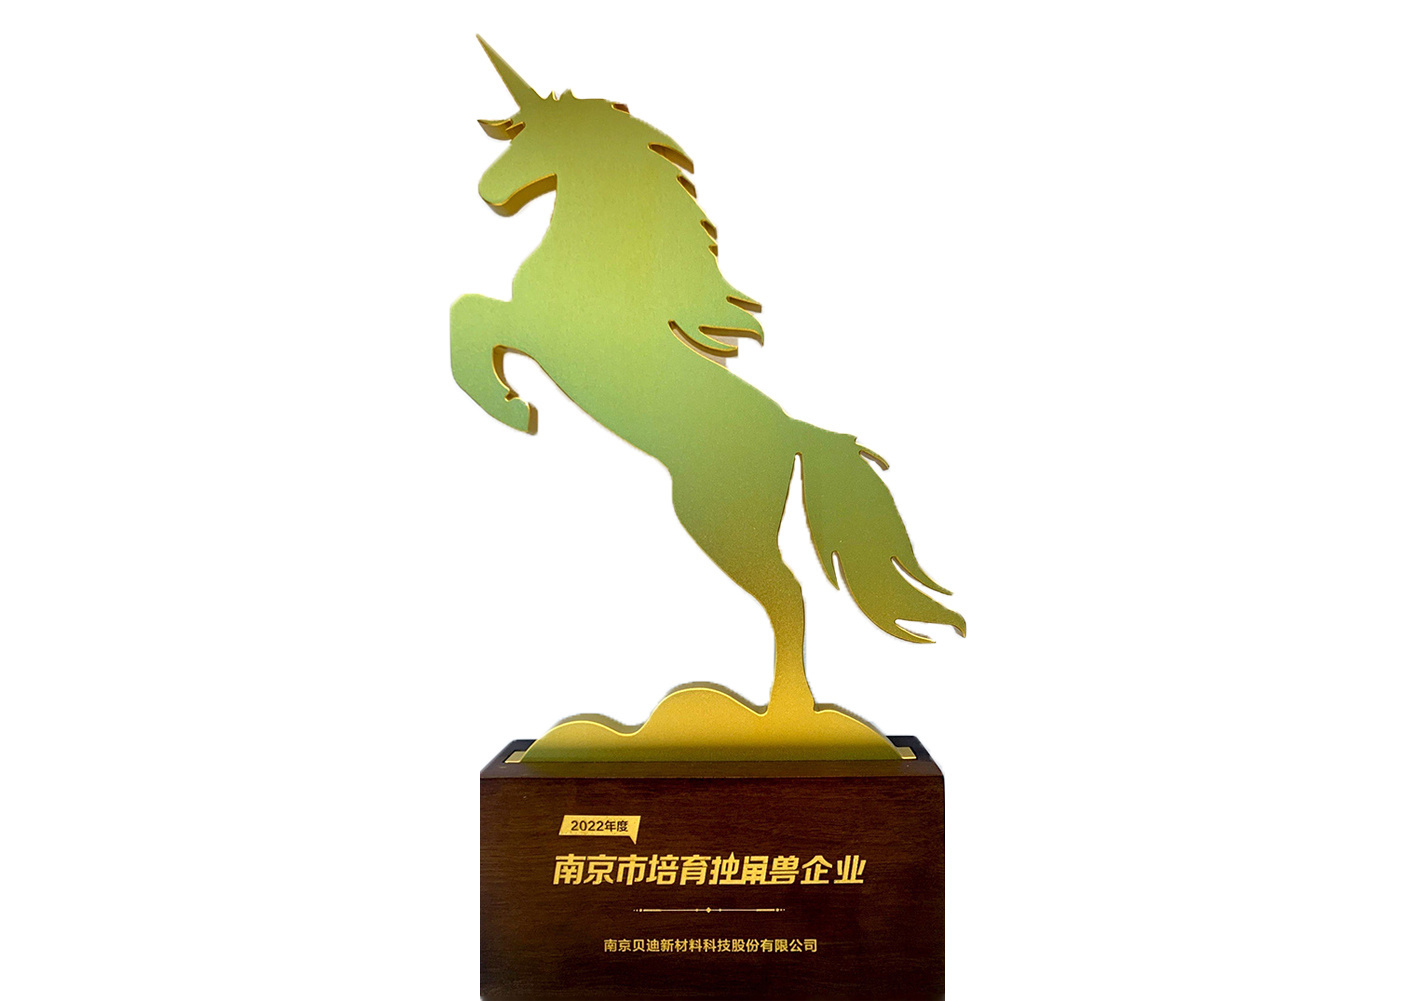 Nanjing Cultivates Unicorn Enterprises